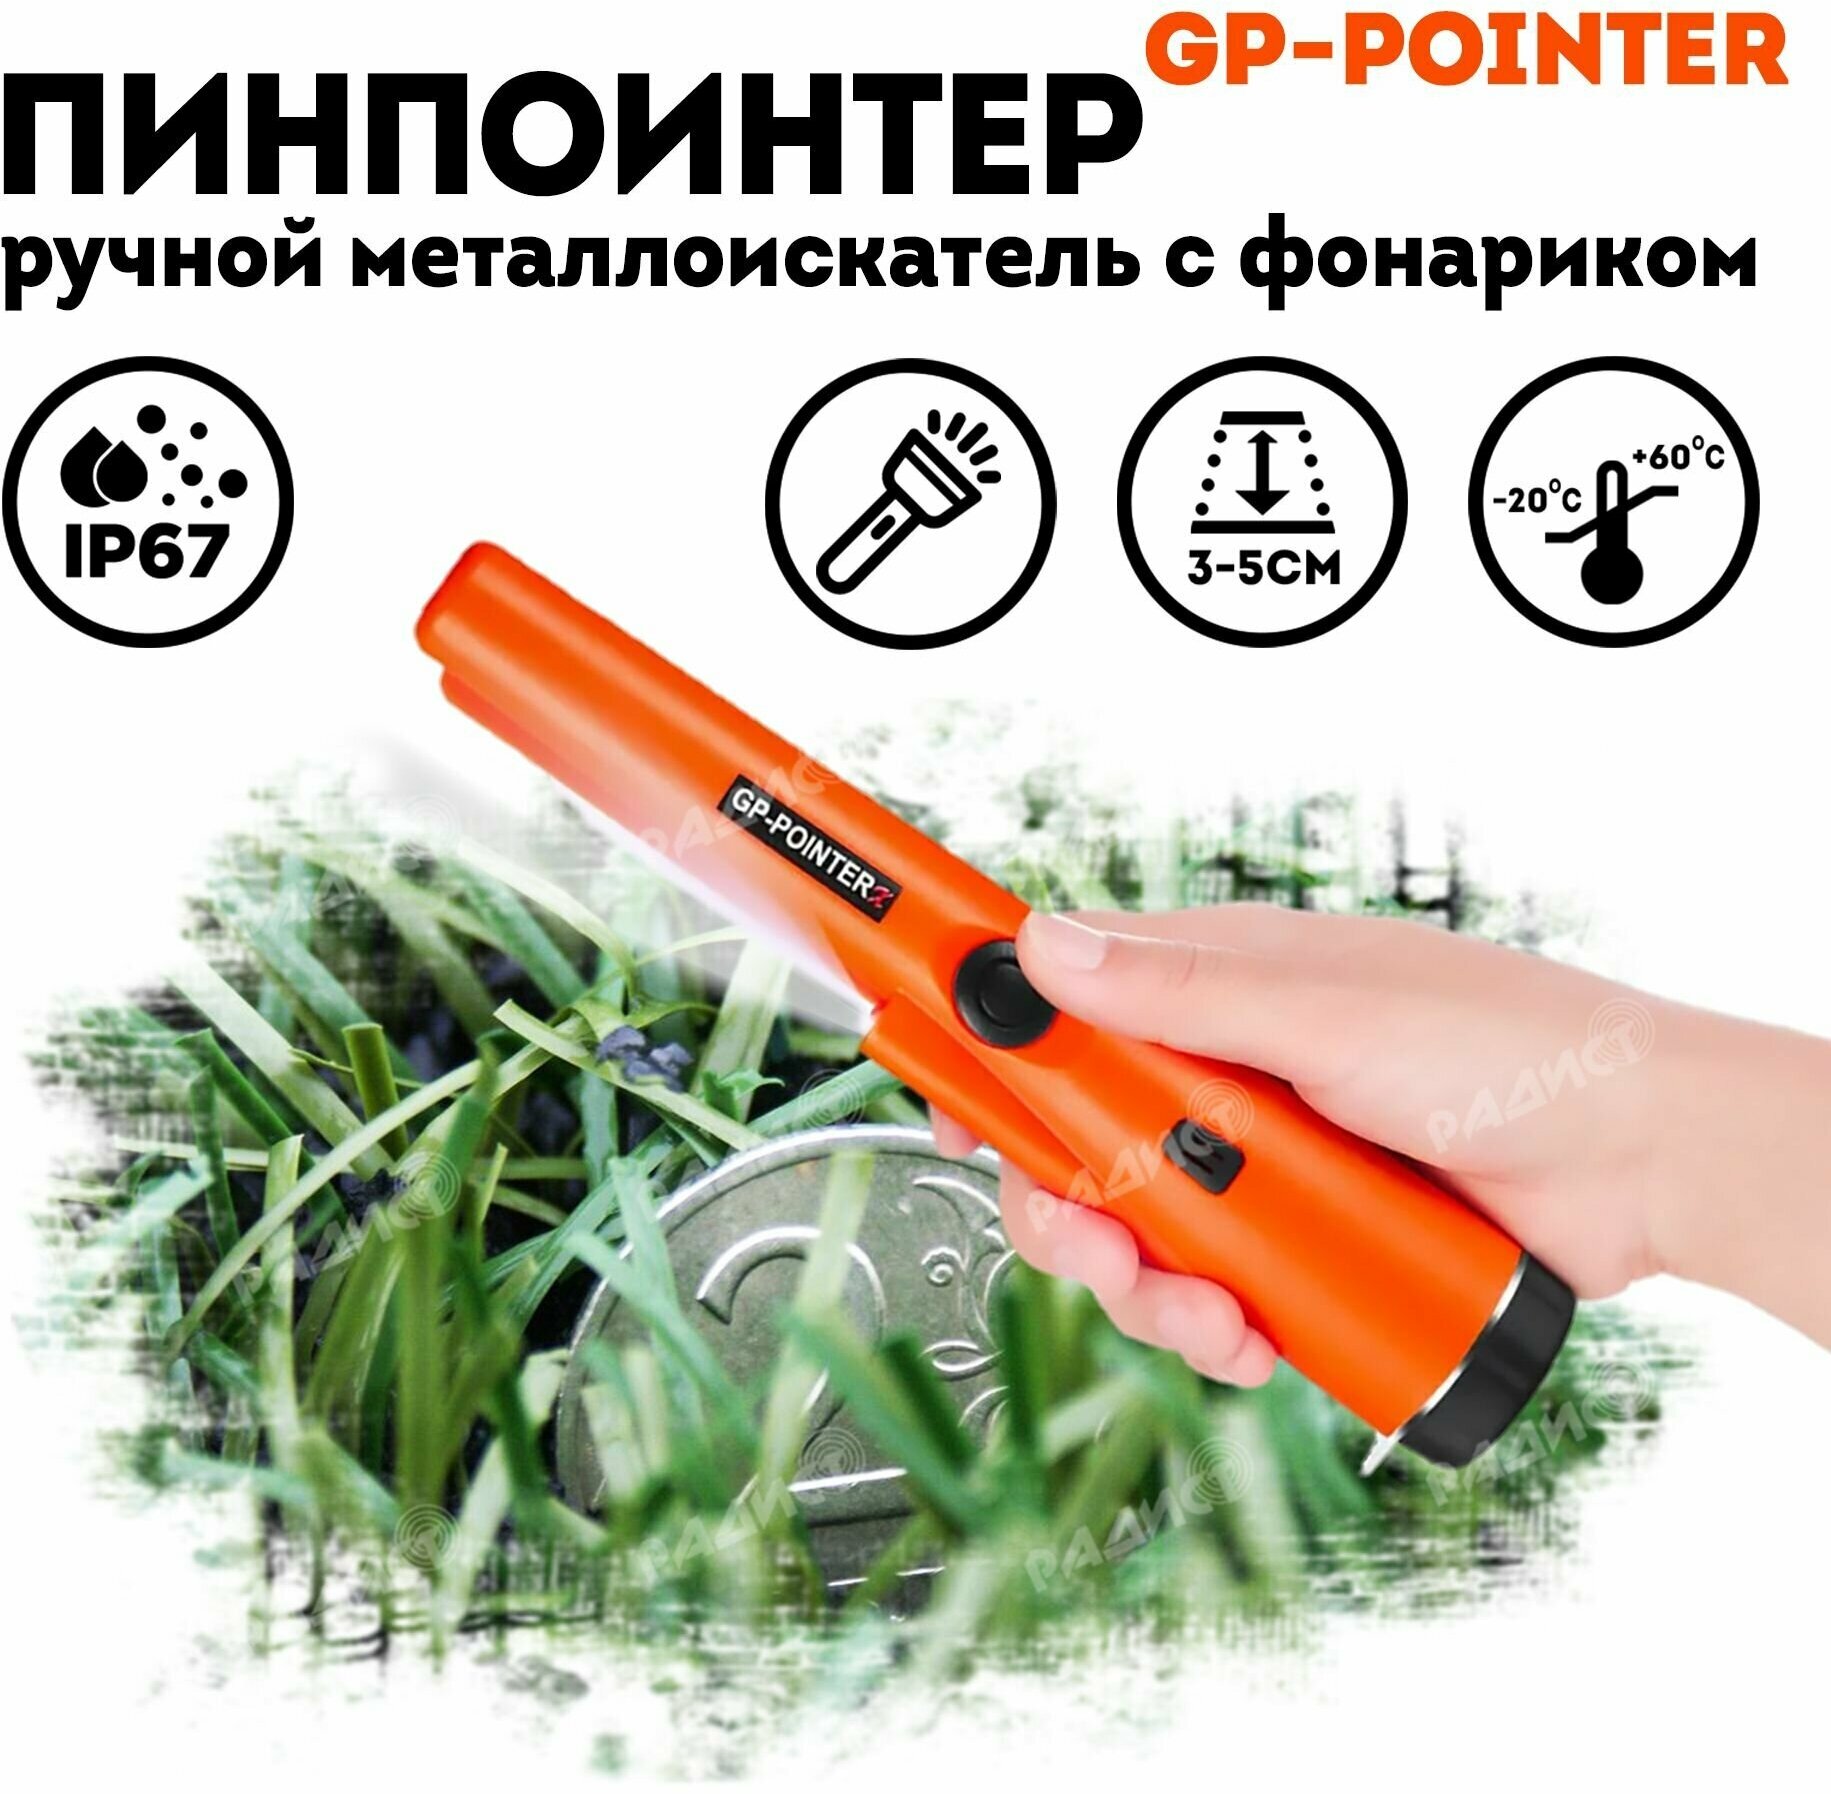 Ручной металлоискатель GP-Pointer MD 700 / Пинпоинтер / Металлодетектор МД 700 оранжевый